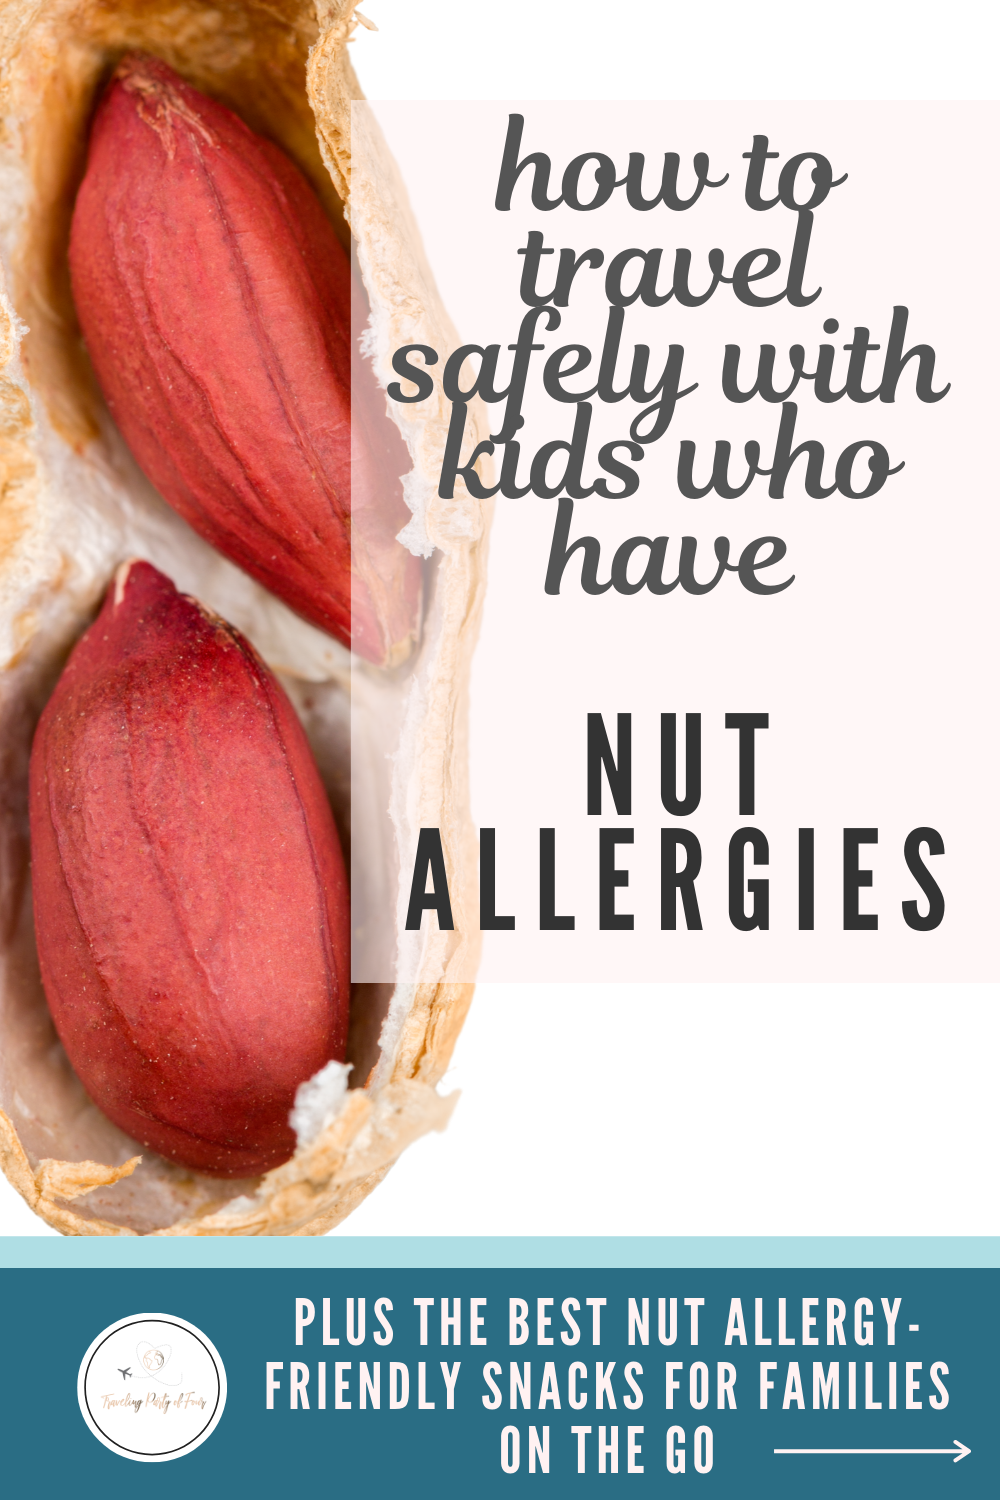 nut allergy travel insurance